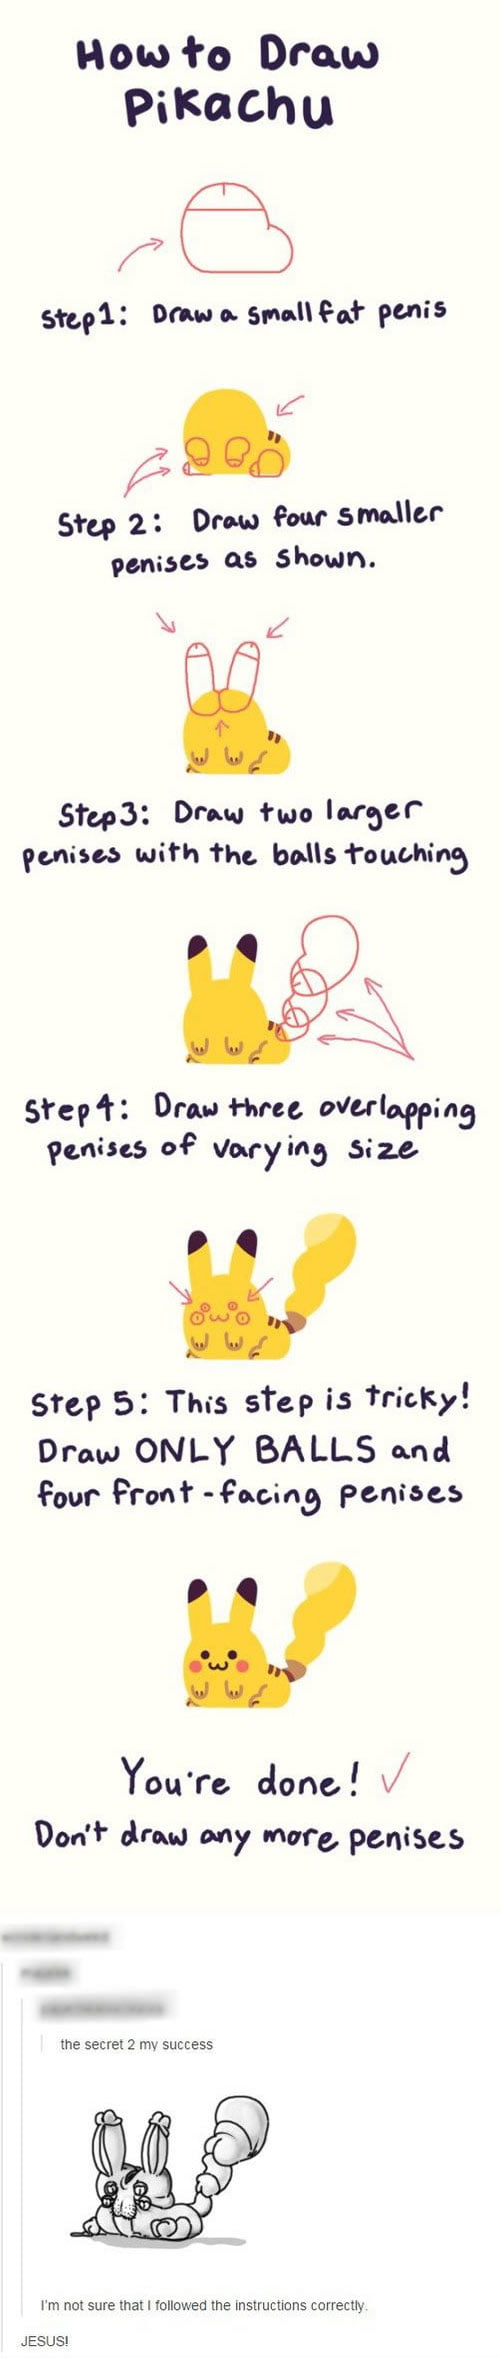 Como dibujar a Pikachu AxG45PK_700b_v2